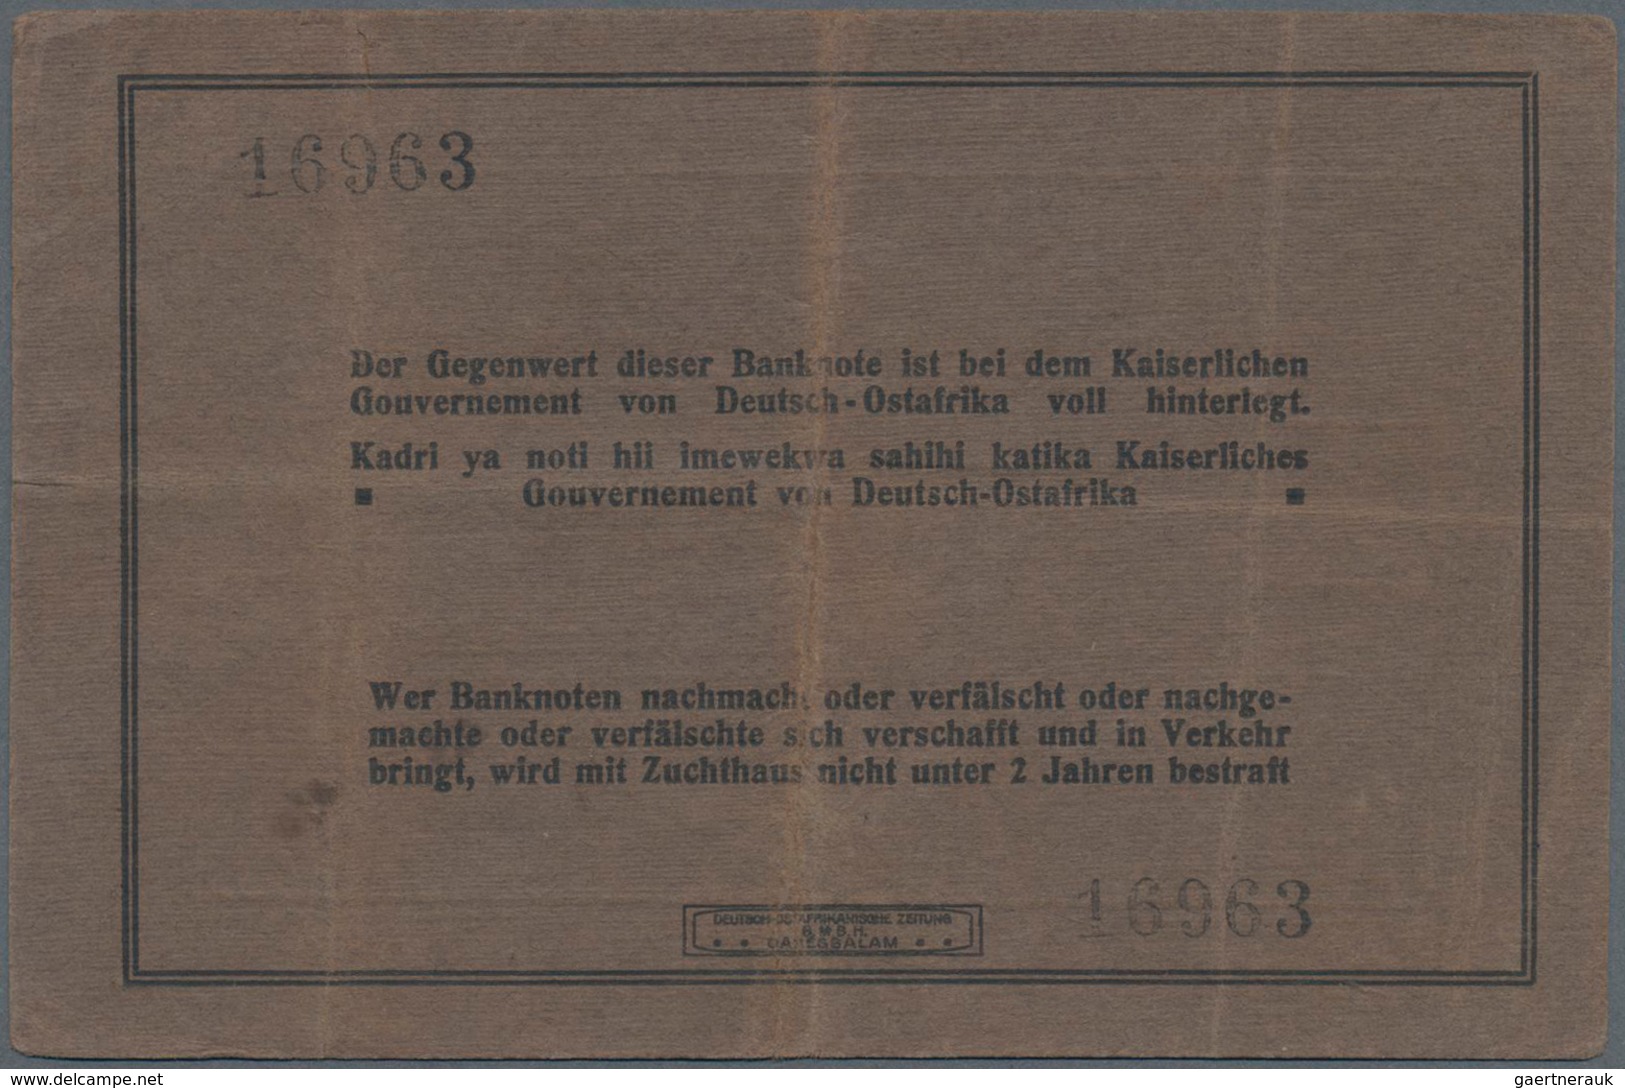 Deutschland - Kolonien: Deutsch-Ostafrika, Lot mit 7 Banknoten, dabei 100 Rupien 1905 (F), 5 und 10